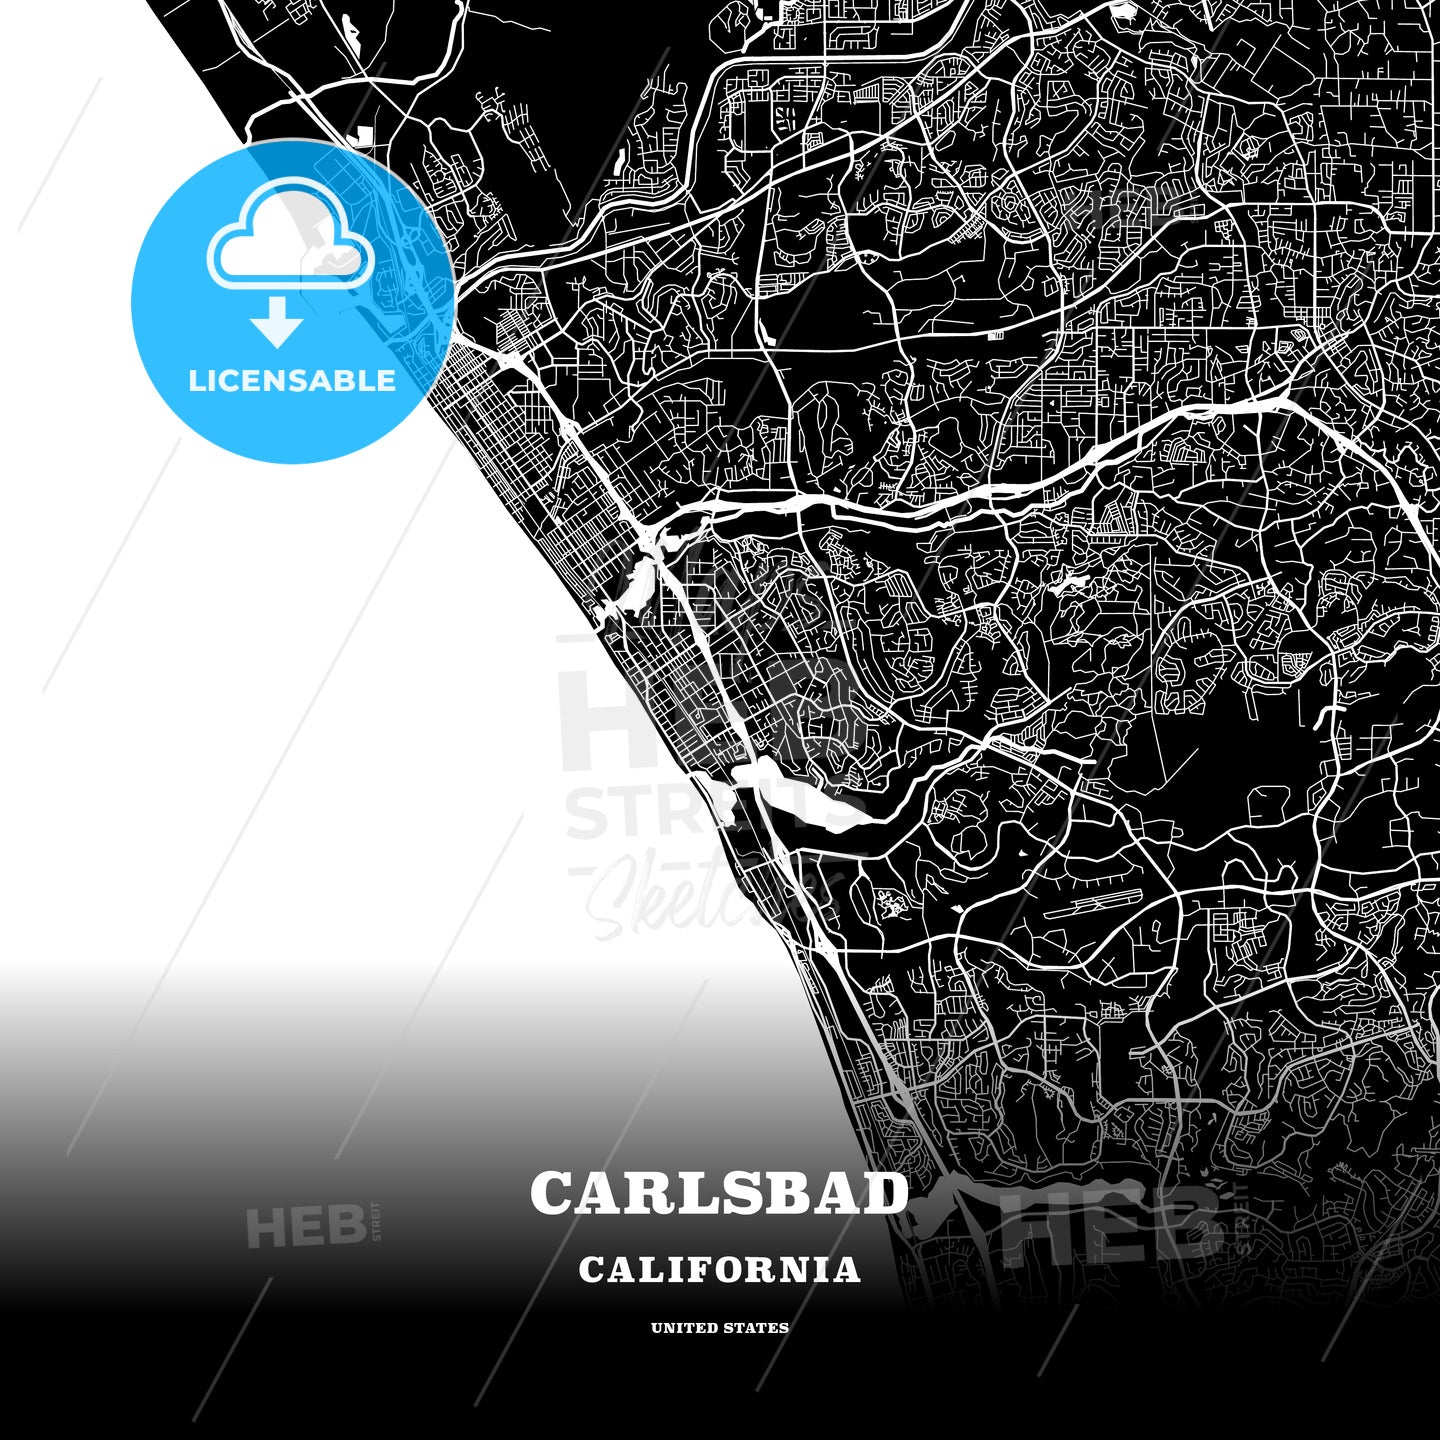 Carlsbad, California, USA map